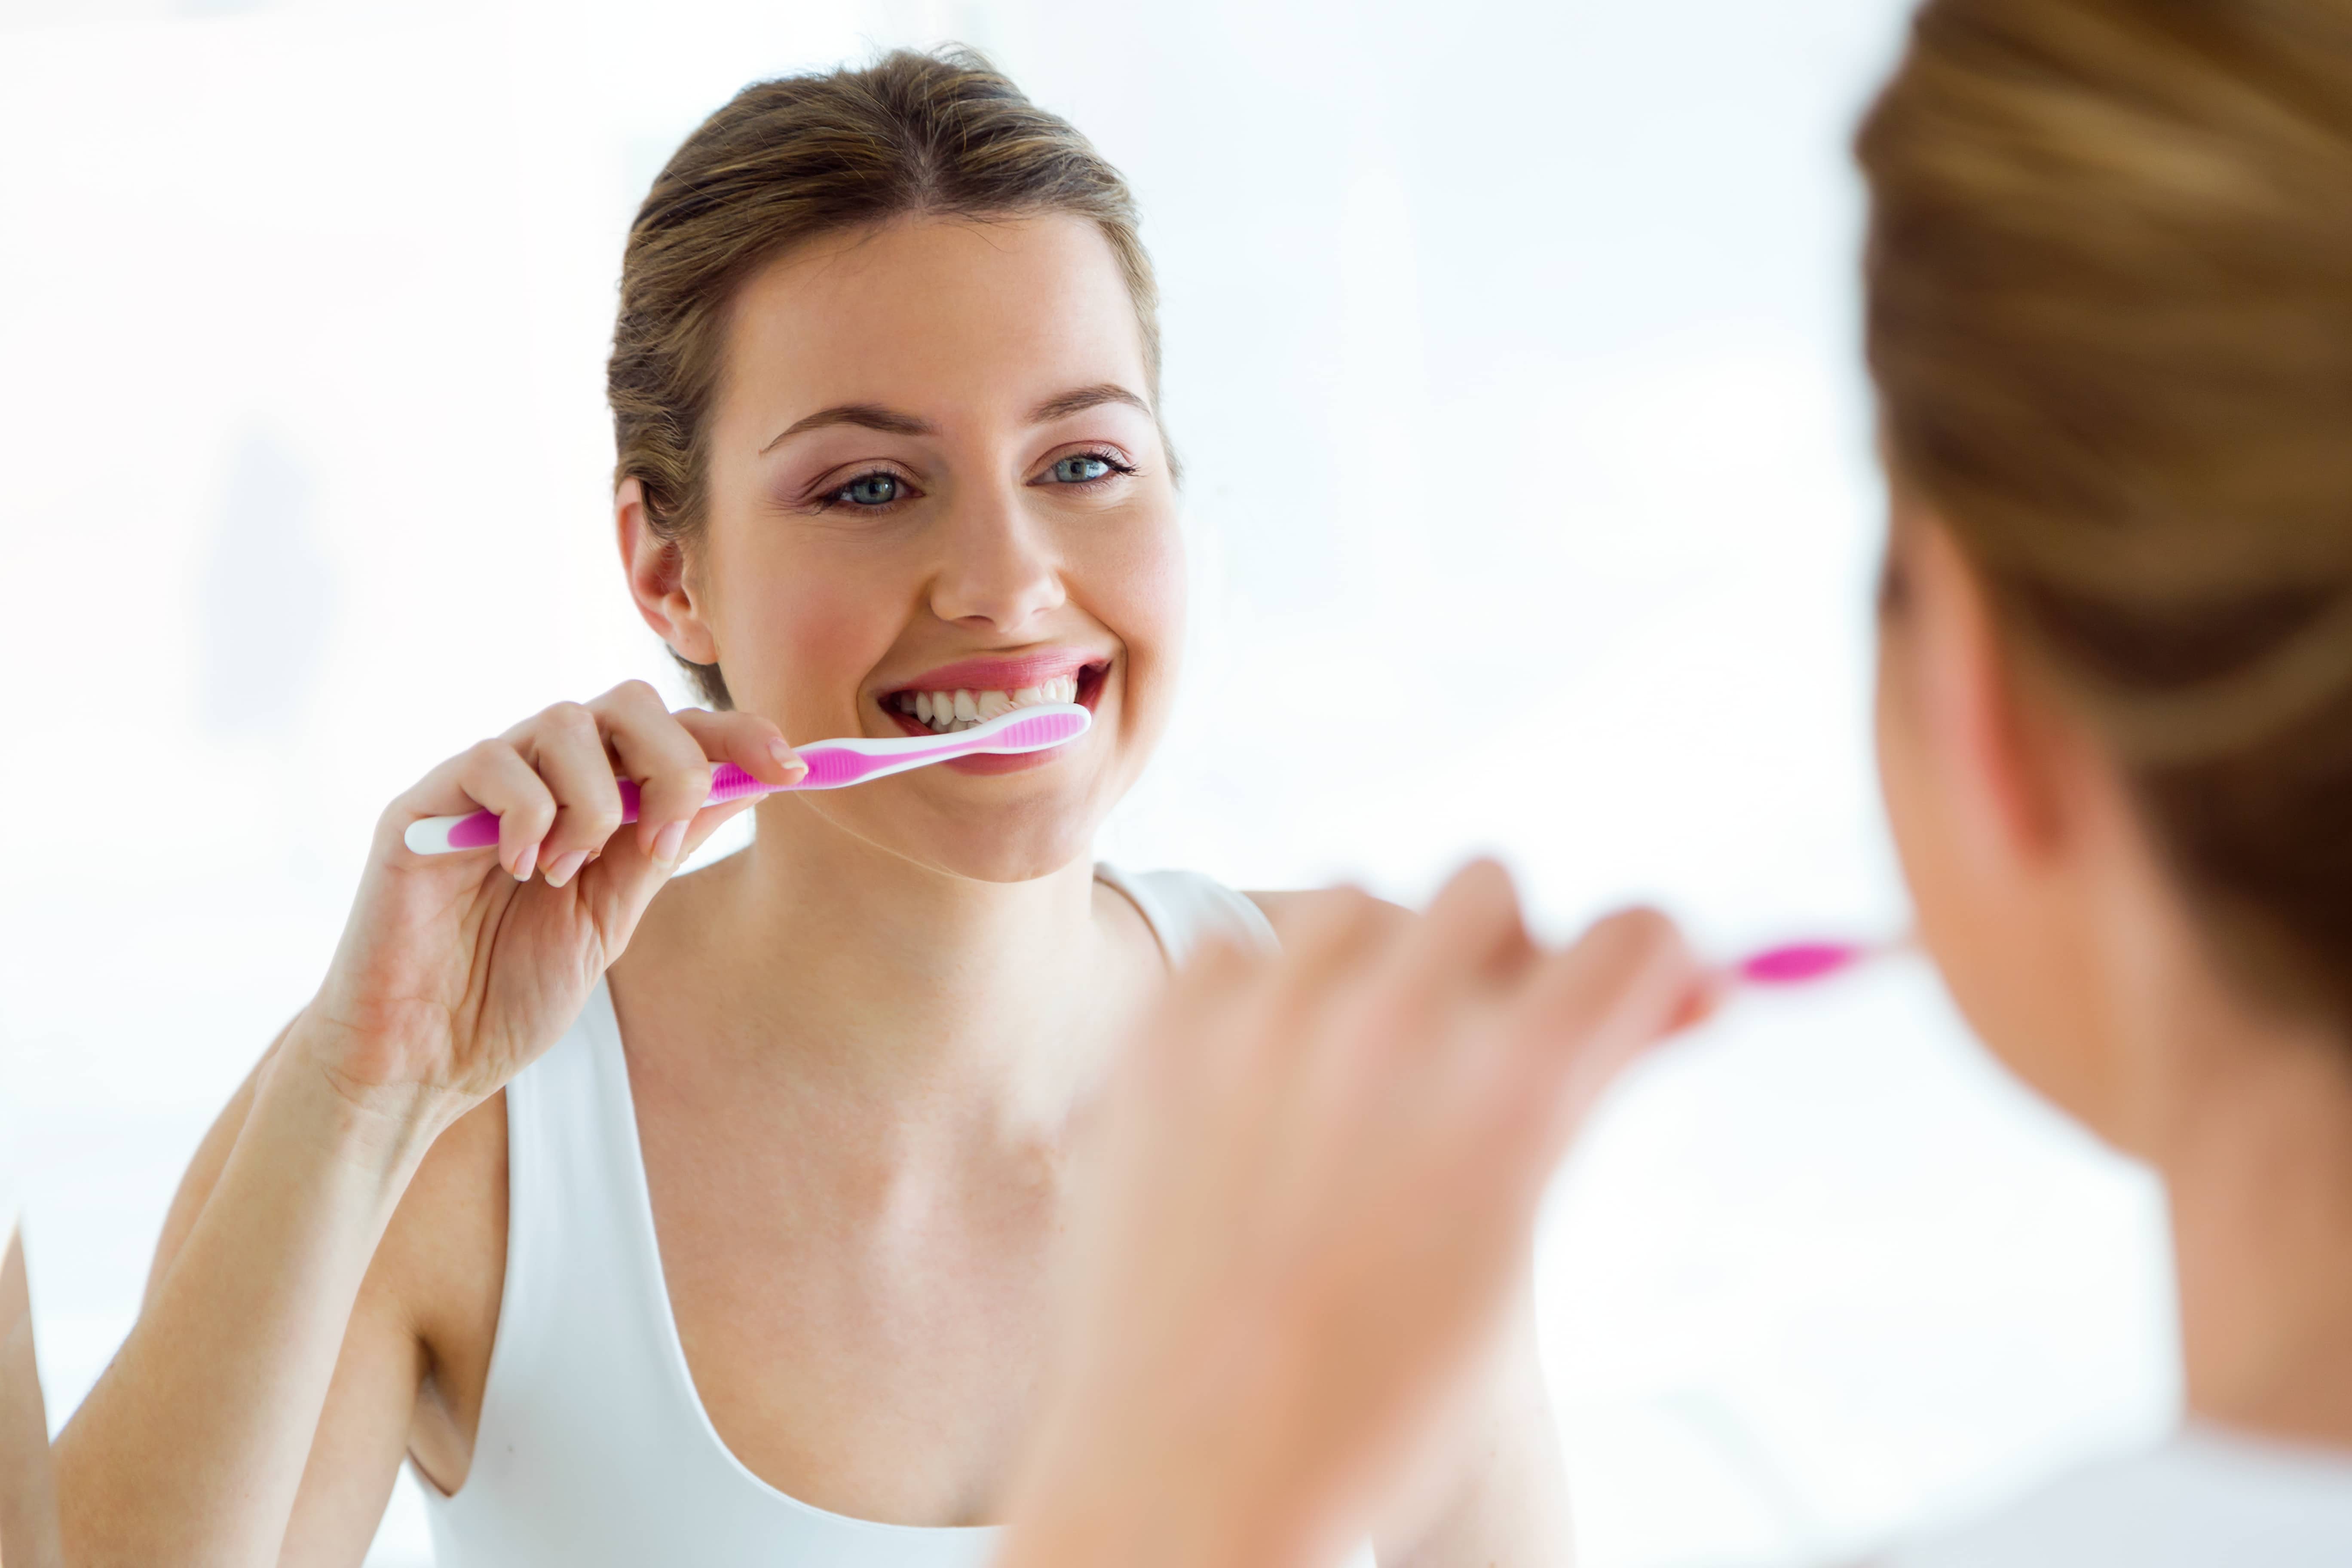 Состояние гигиены полости рта. Чистим зубы!. Человек чистит зубы. Красивая девушка чистит зубы. Профессиональная чистка полости рта.